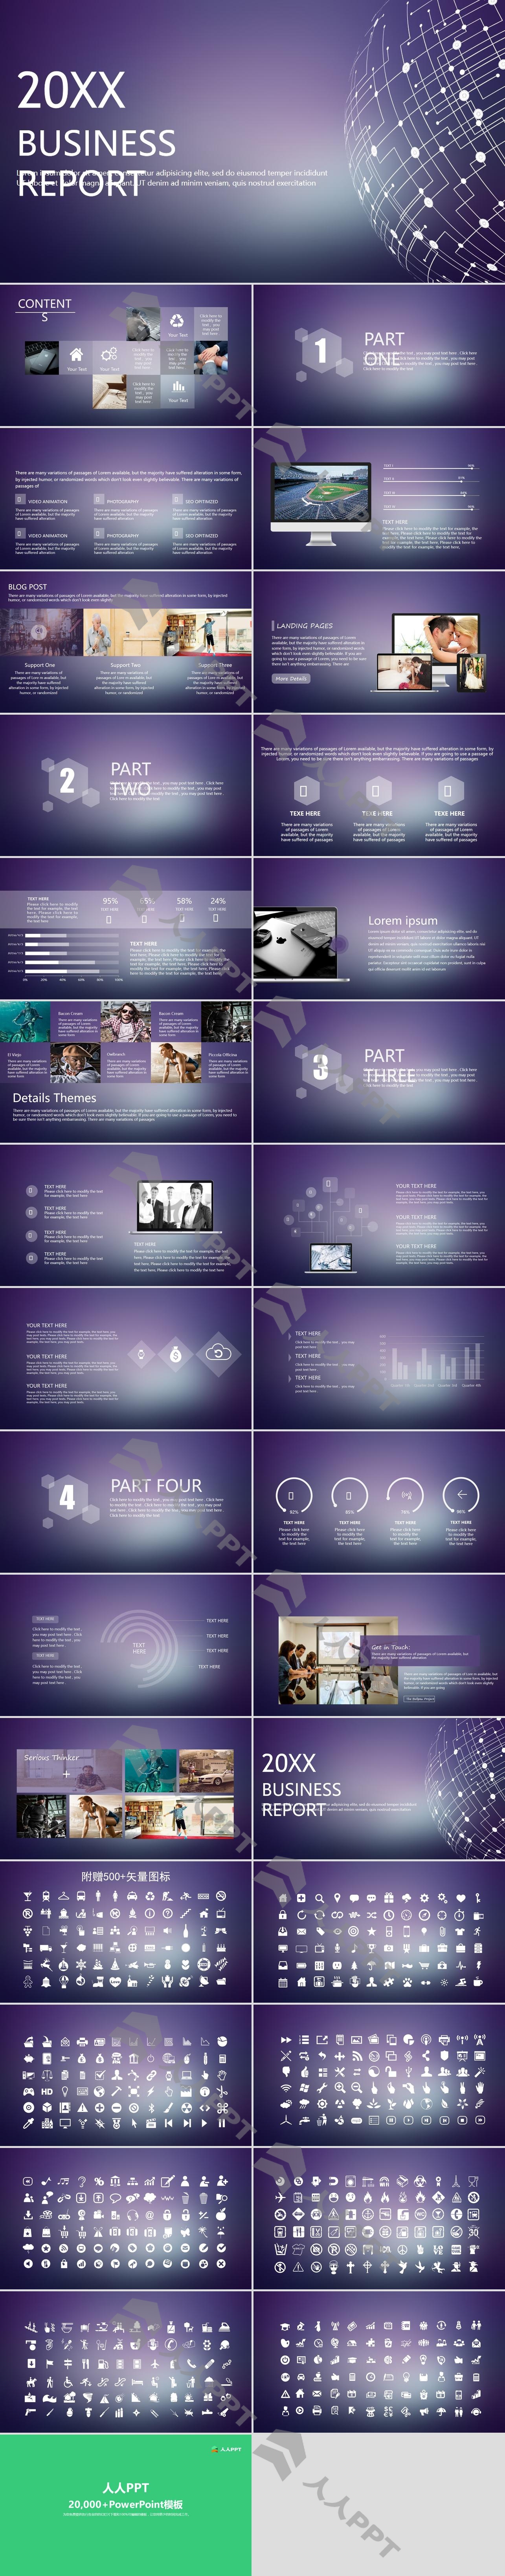 紫色iOS风格的欧美科技PPT模板长图